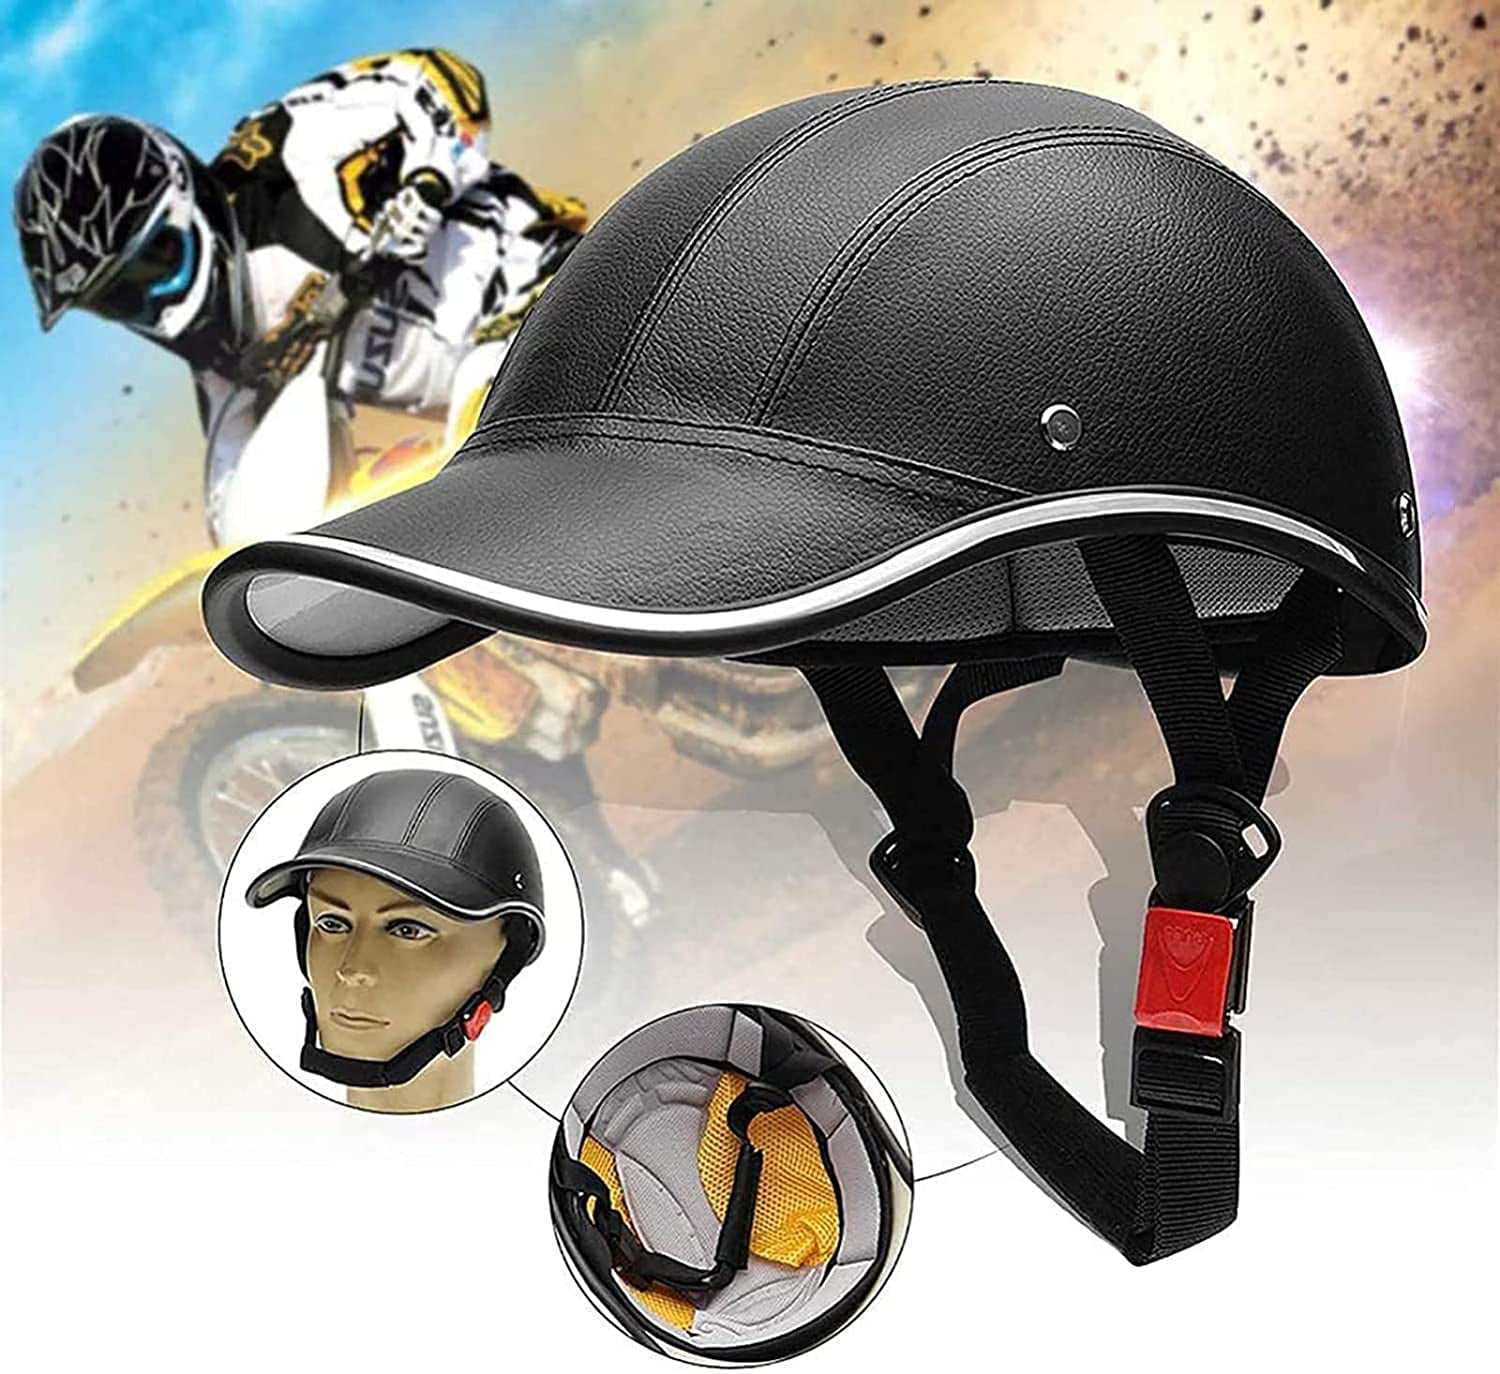 Motorcycle Helmet Bike Bicycle Baseball Cap Safety Half Helmet for Men Women US 